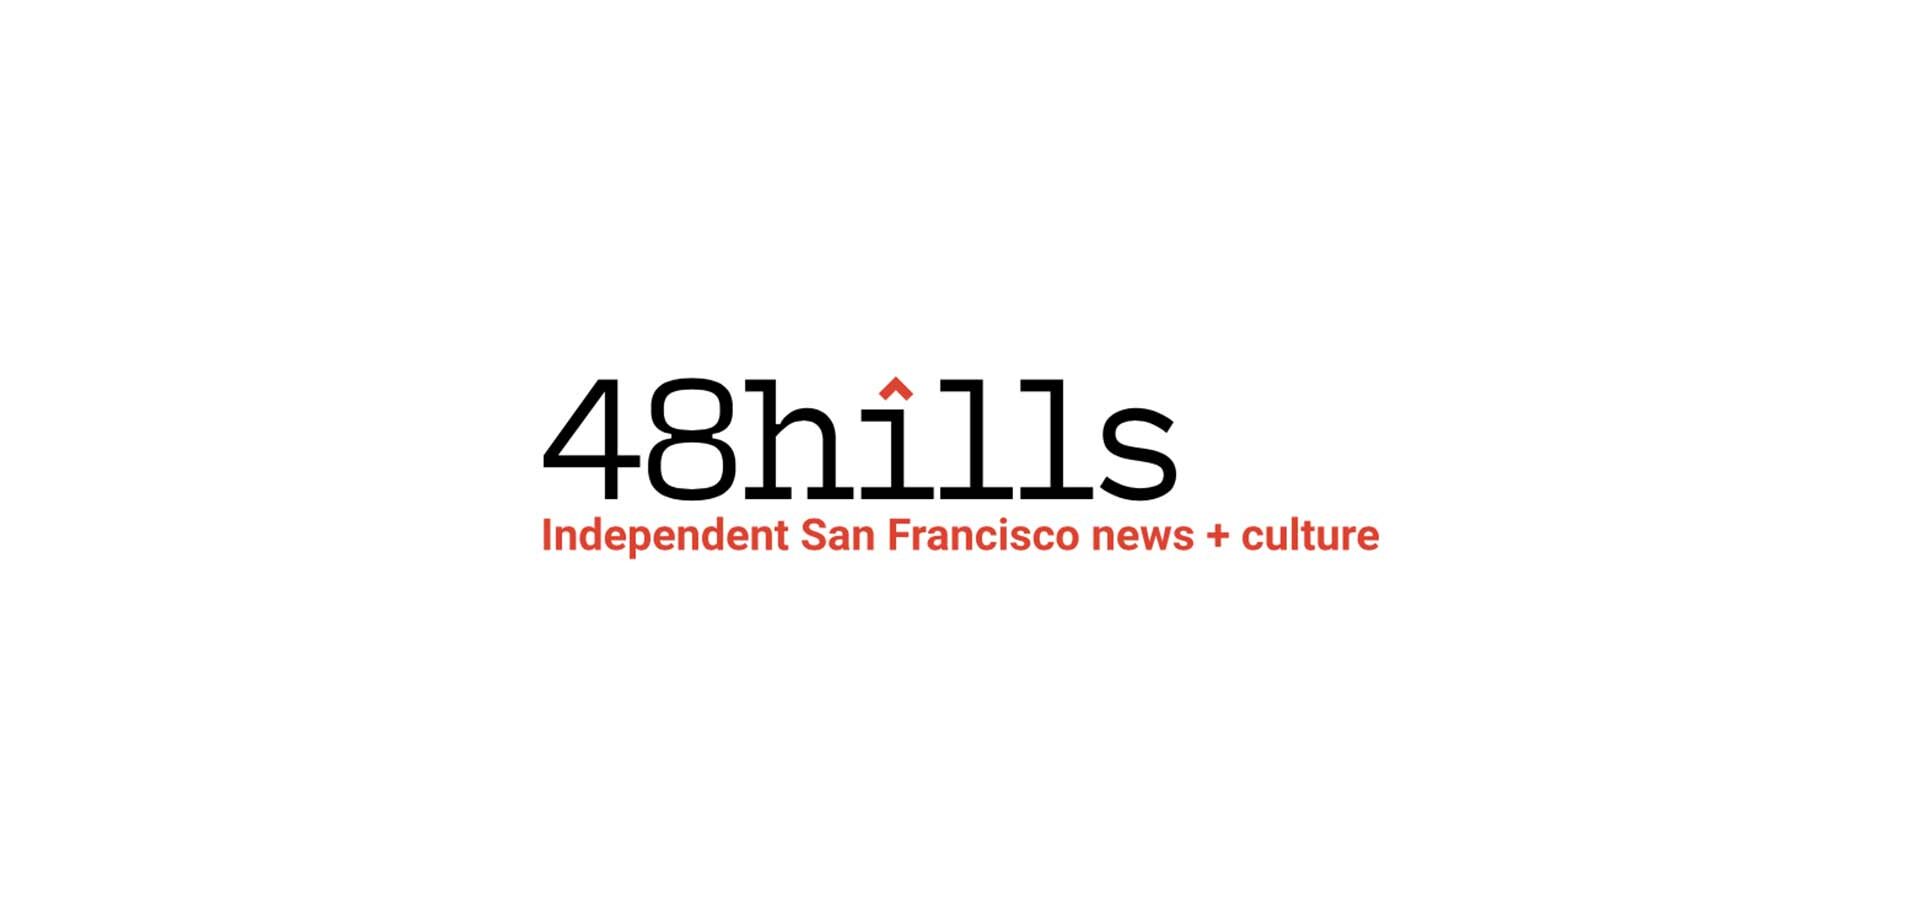 48 Hills, Independent San Francisco news + culture